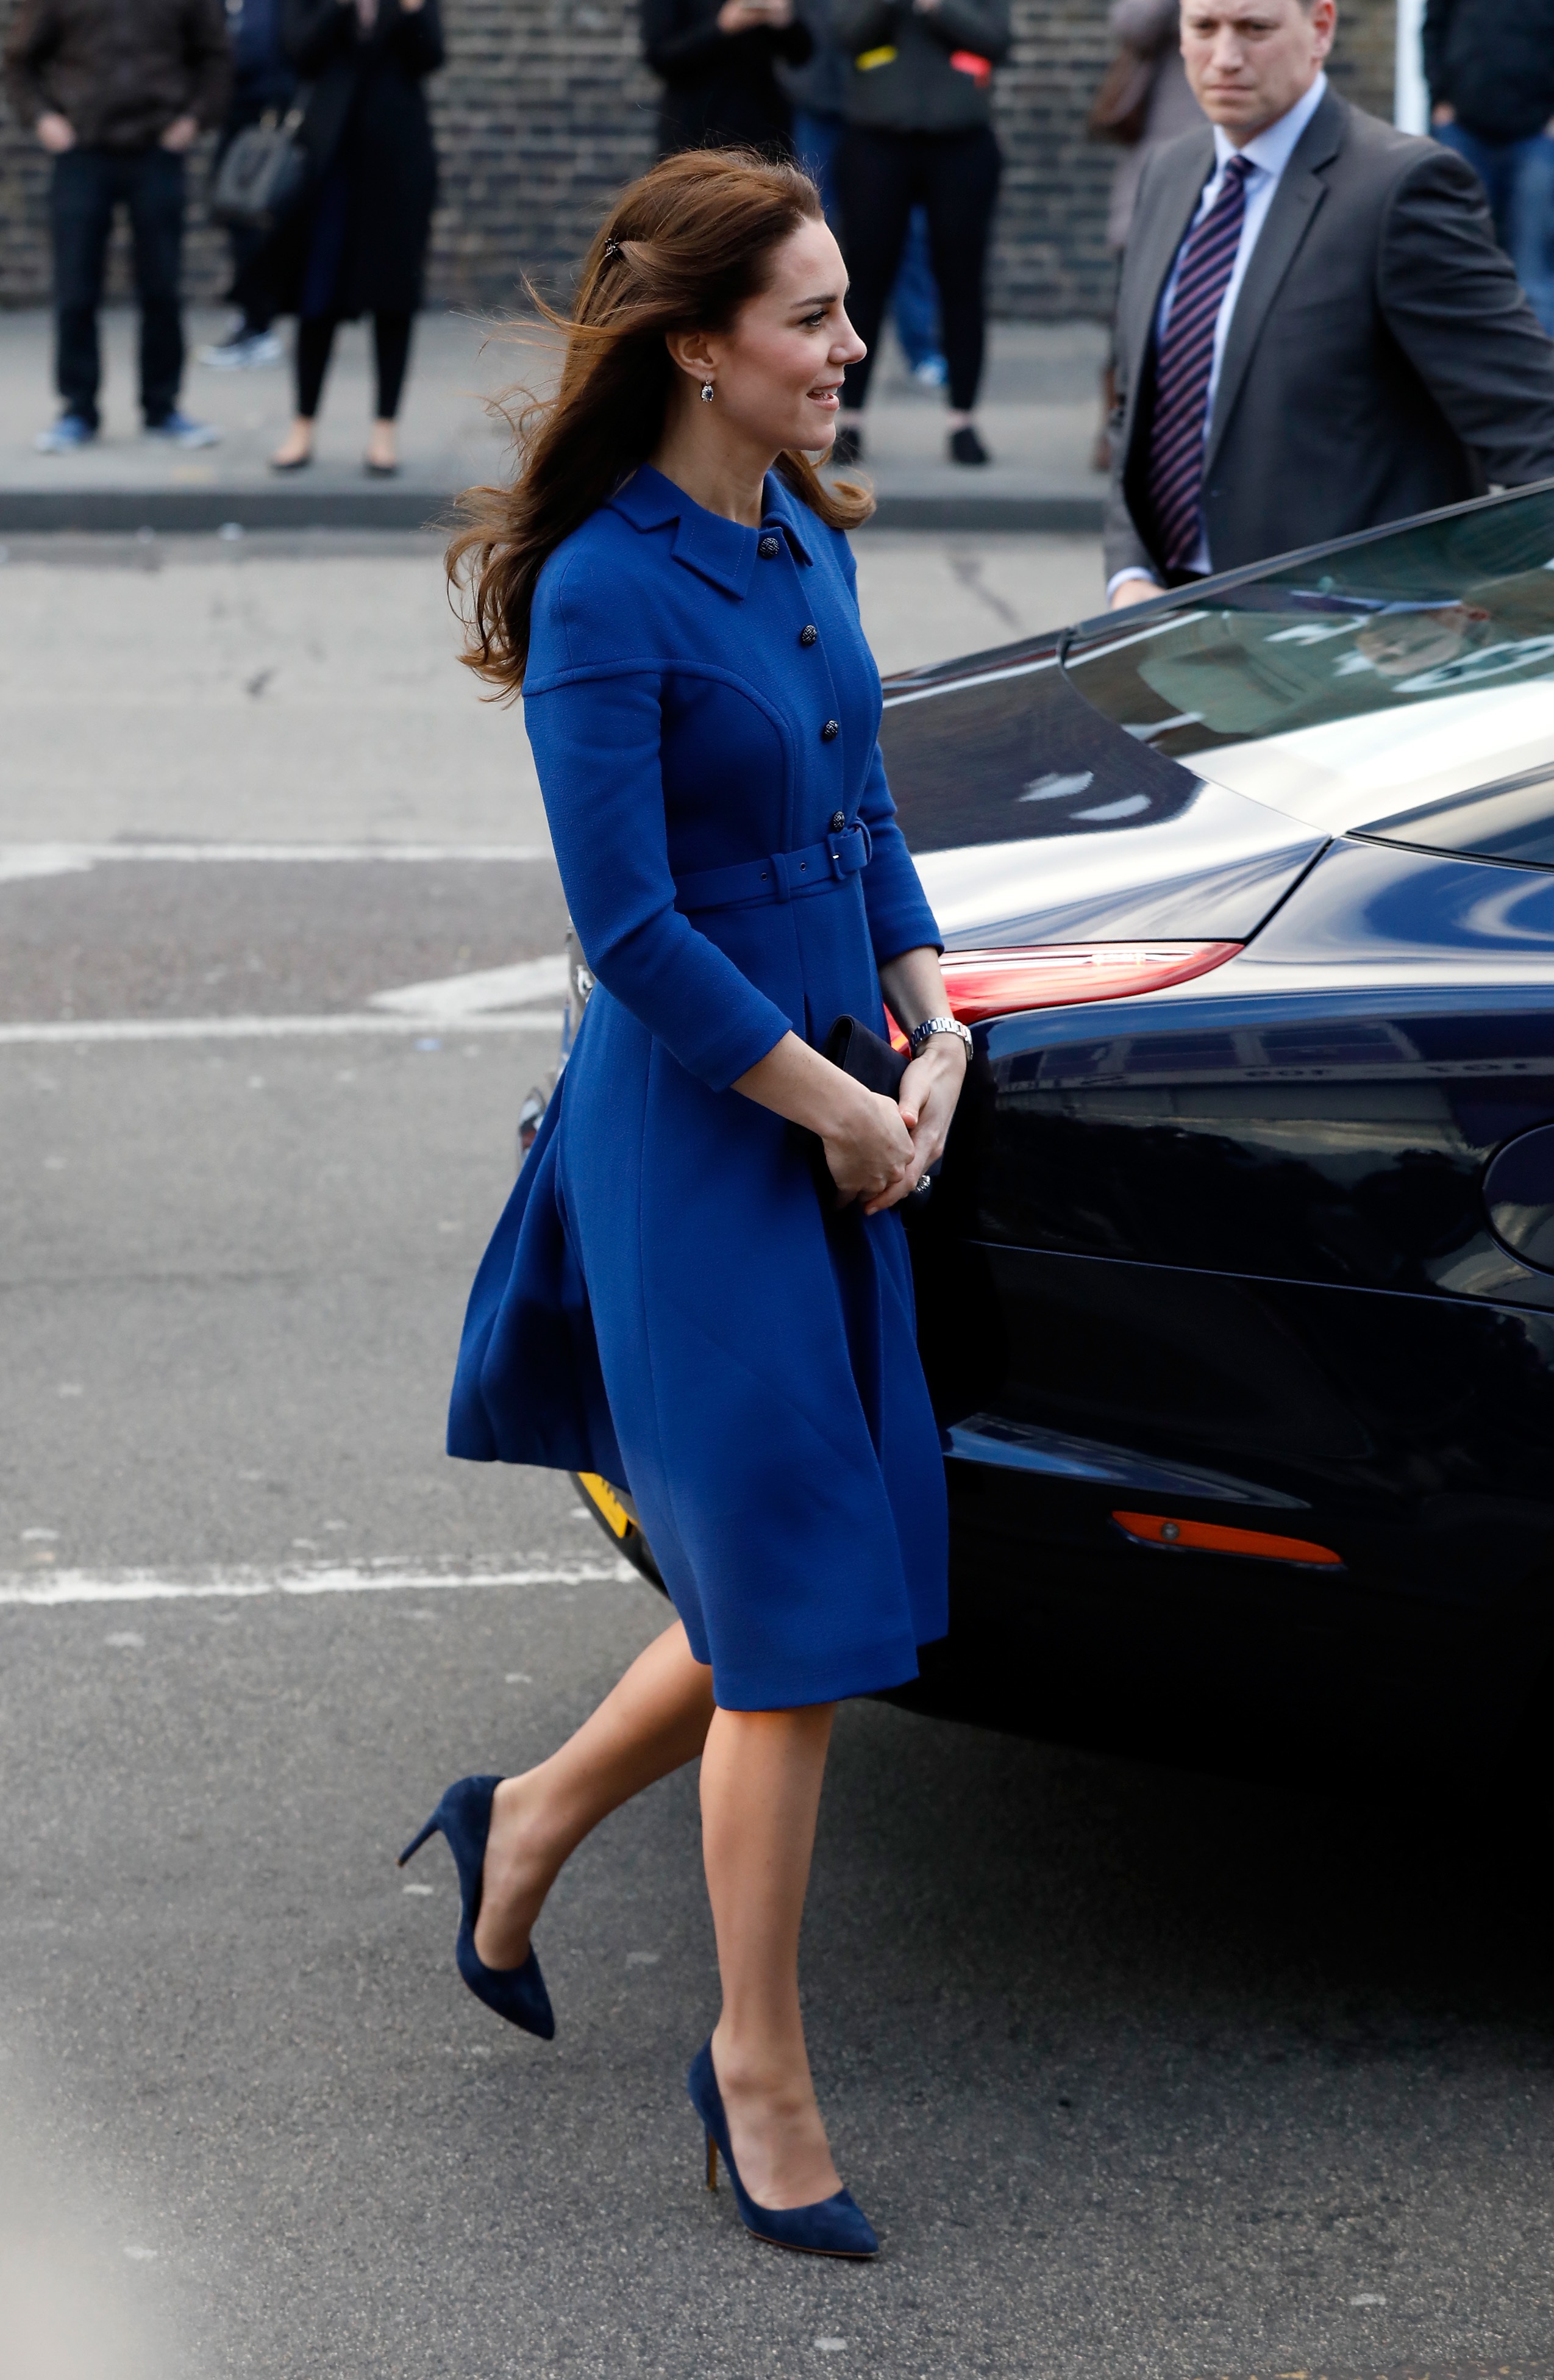 За първото си официално събитие през 2017-а година Кейт Мидълтън се появи в елегантно палто тип рокля в кралско синьо, дело на български дизайнер. Дизайнът е на Петър Петров, който работи за английската марка "Епонин". Фирмата е известна със стилните си дрехи в стилистиката на 50-те и 60-те години. Съпругата на принц Уилям избира за втори път техен тоалет.